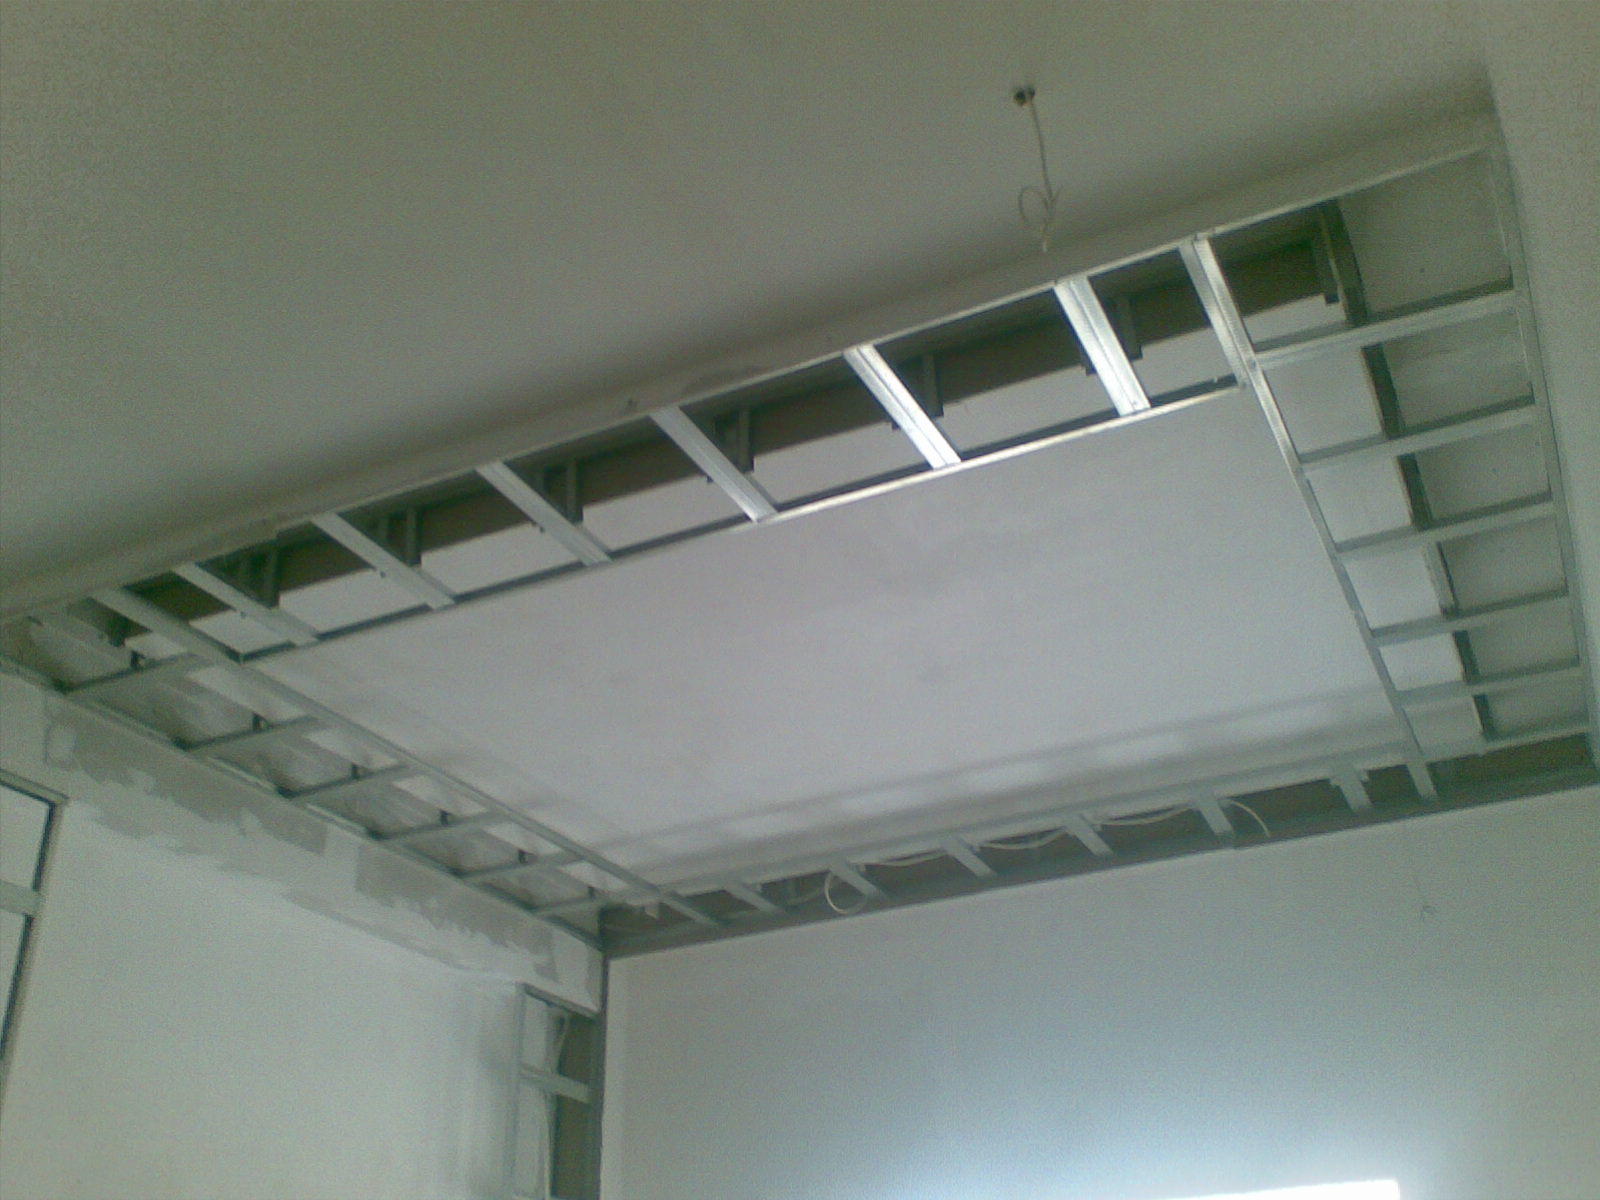 короб из гипсокартона на потолке с натяжным потолком